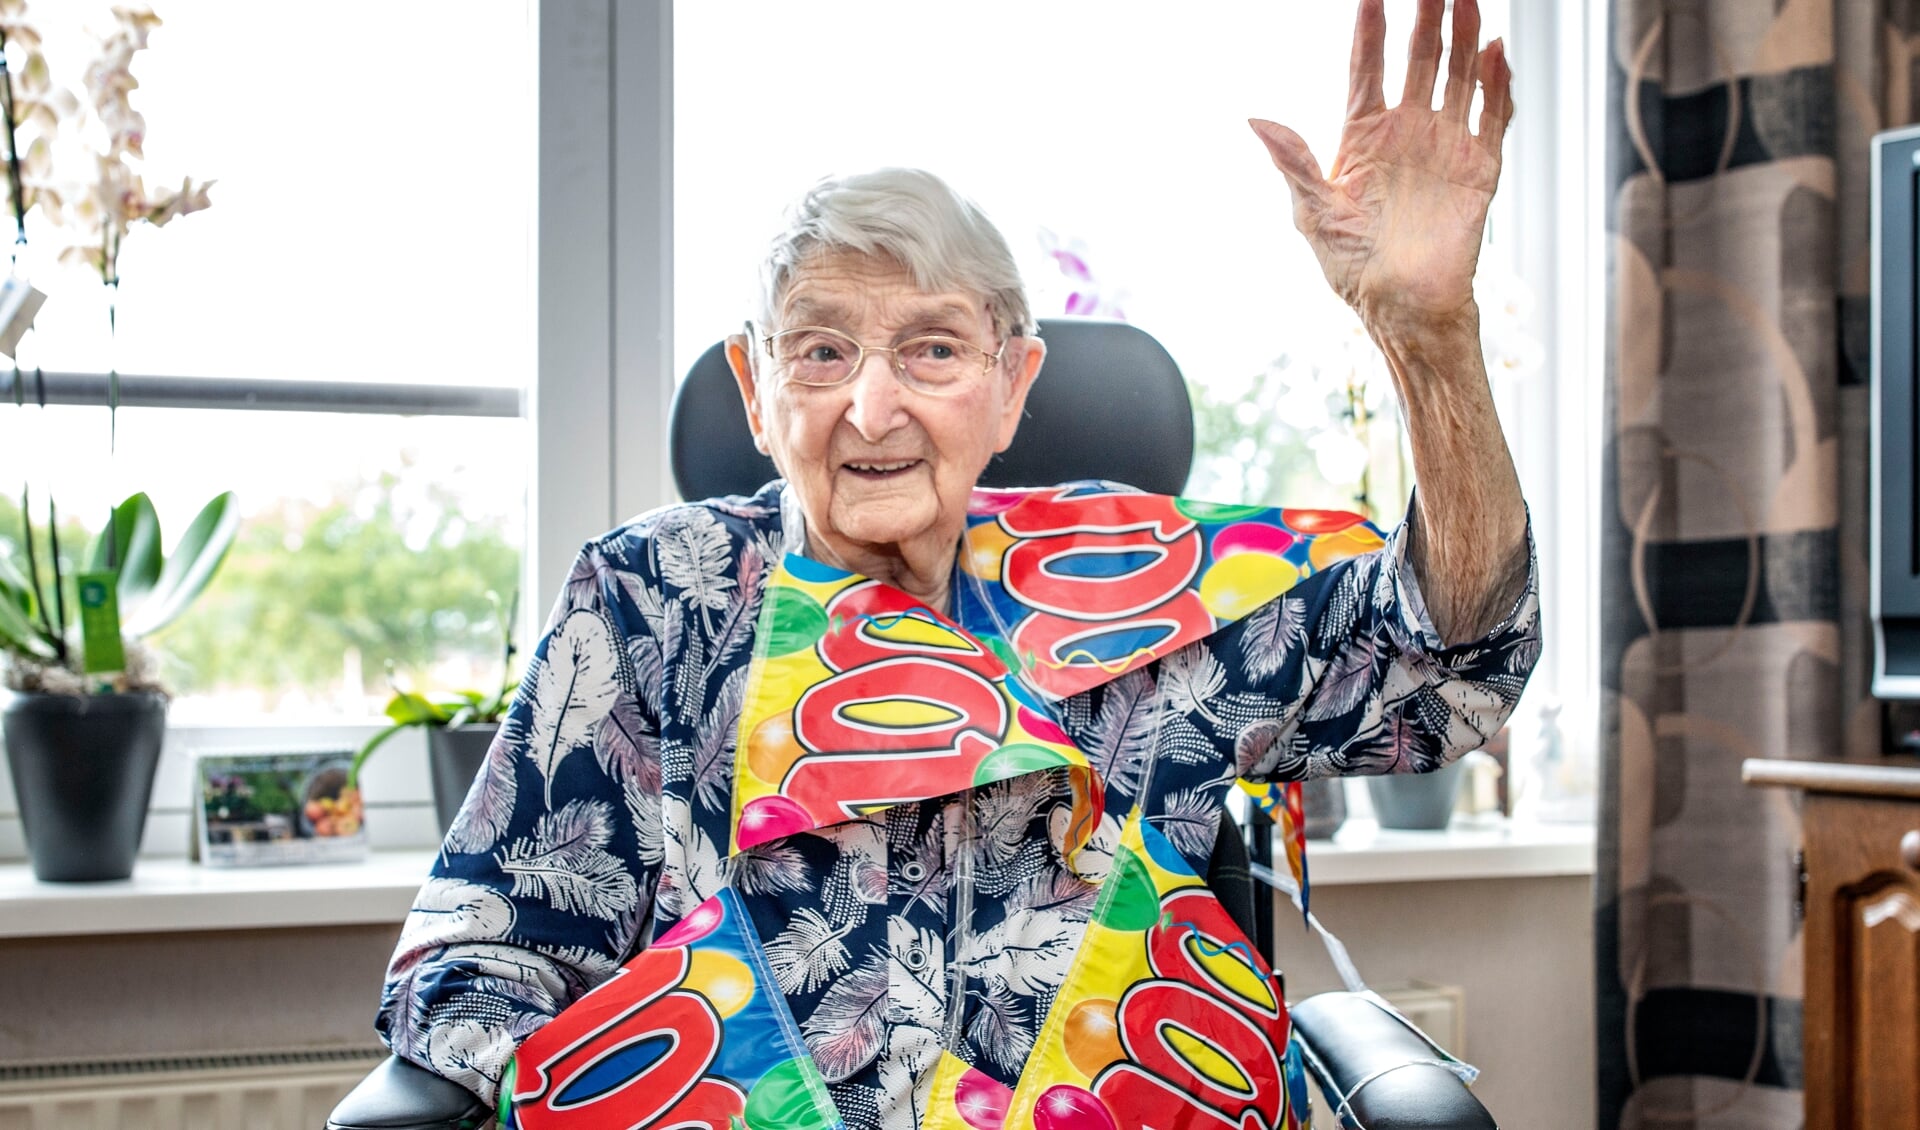 De jarige Kea Sweertman-Looden uit Vlagtwedde kreeg de slingers omgehangen voor haar 100e verjaardag. (foto: Auniek Klijnstra)